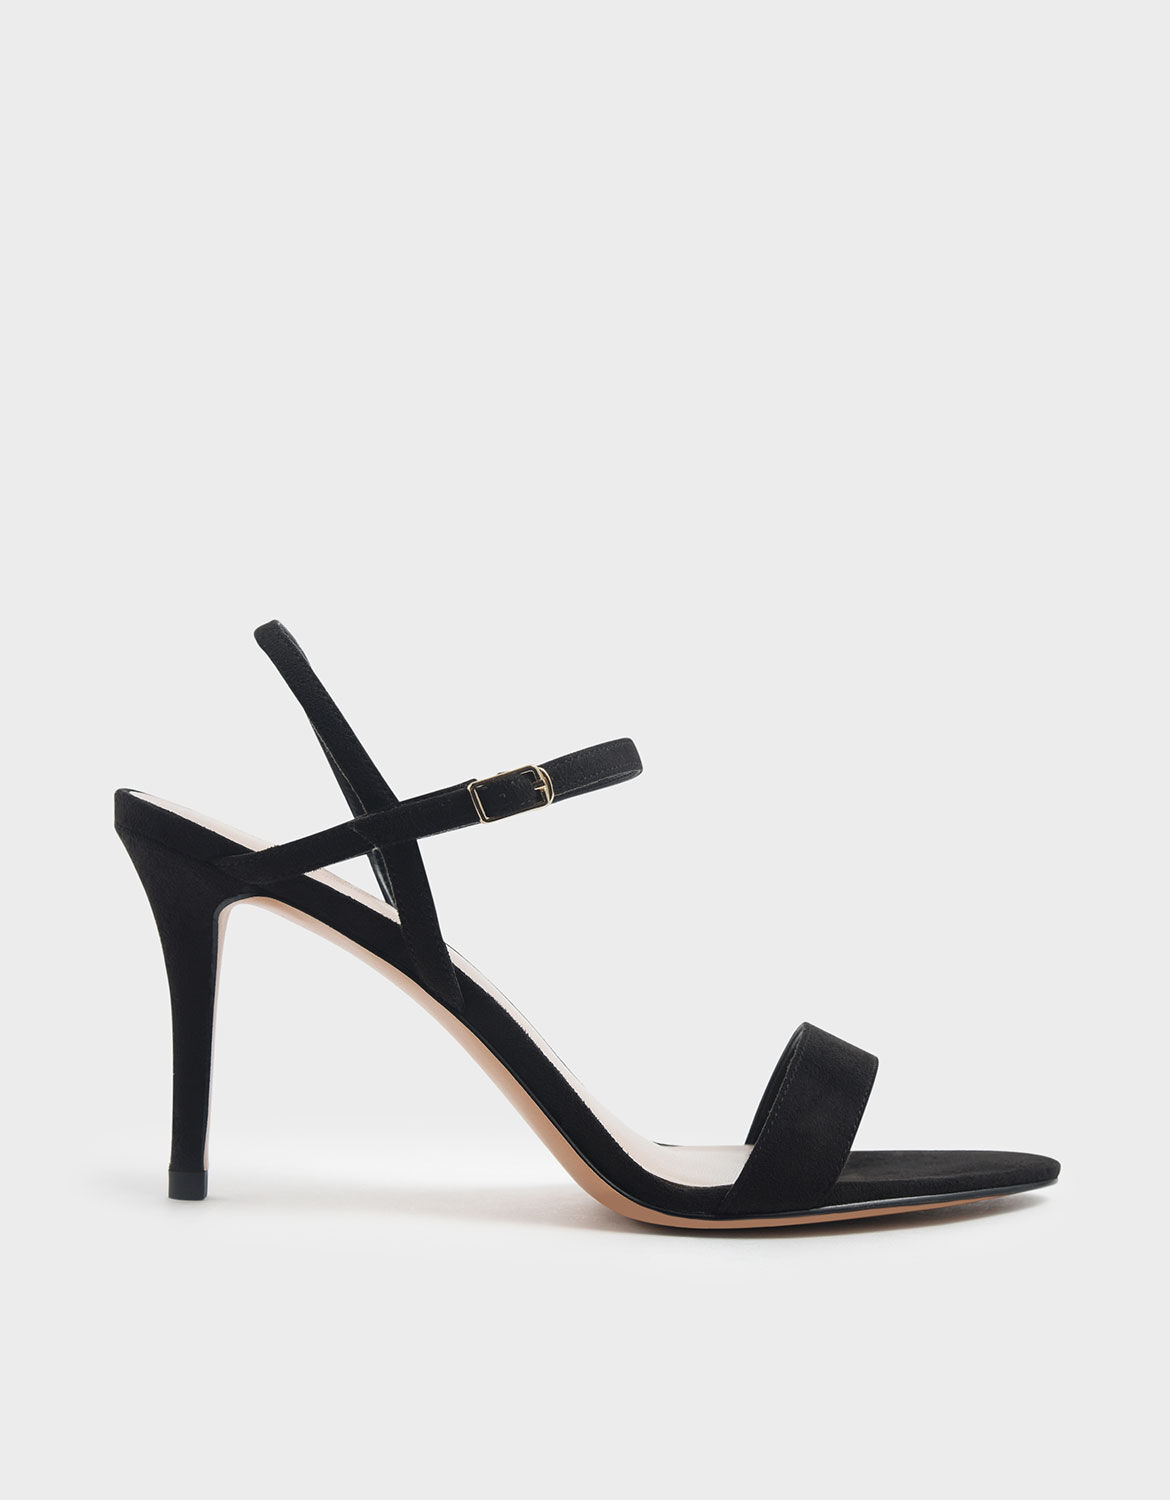 simple black high heels